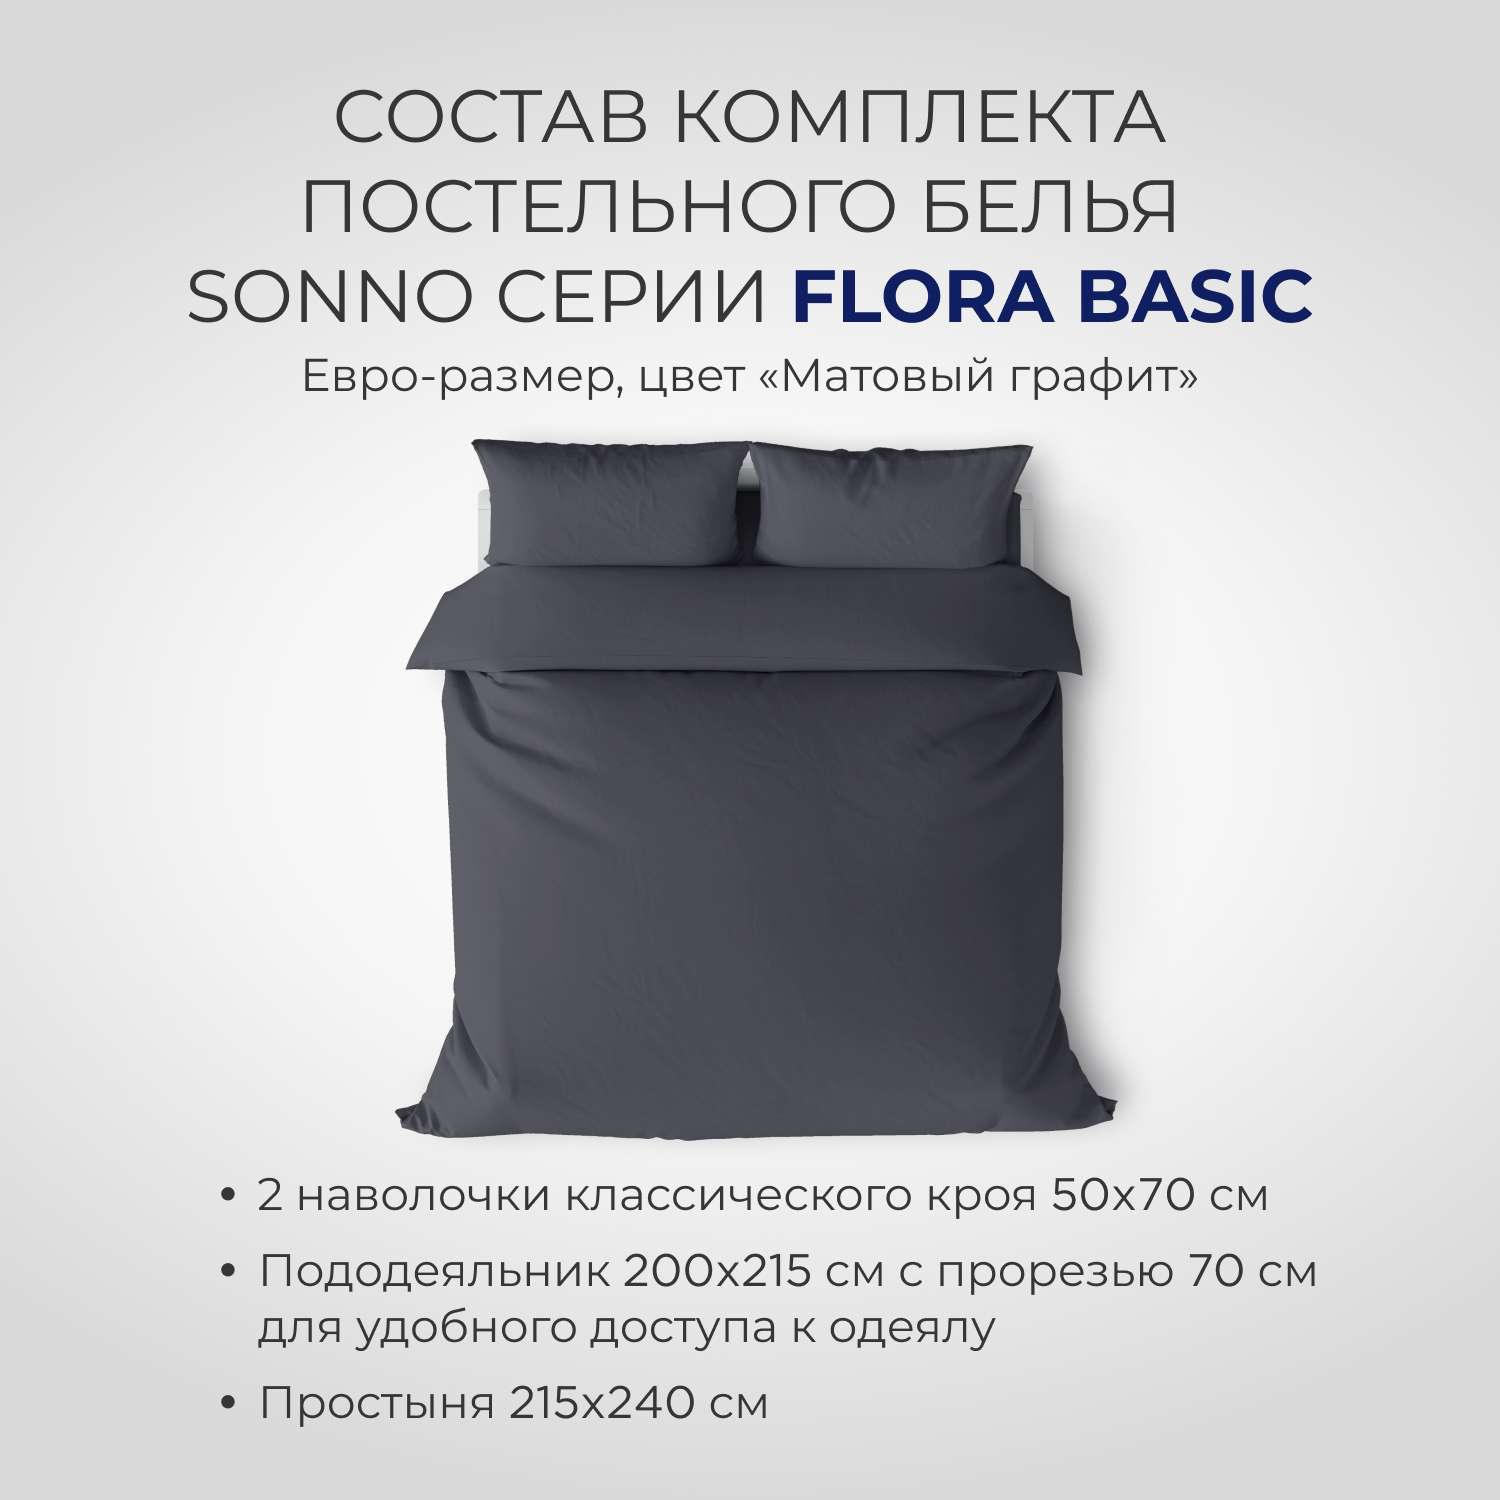 Комплект постельного белья SONNO FLORA BASIC евро-размер цвет Матовый графит - фото 2